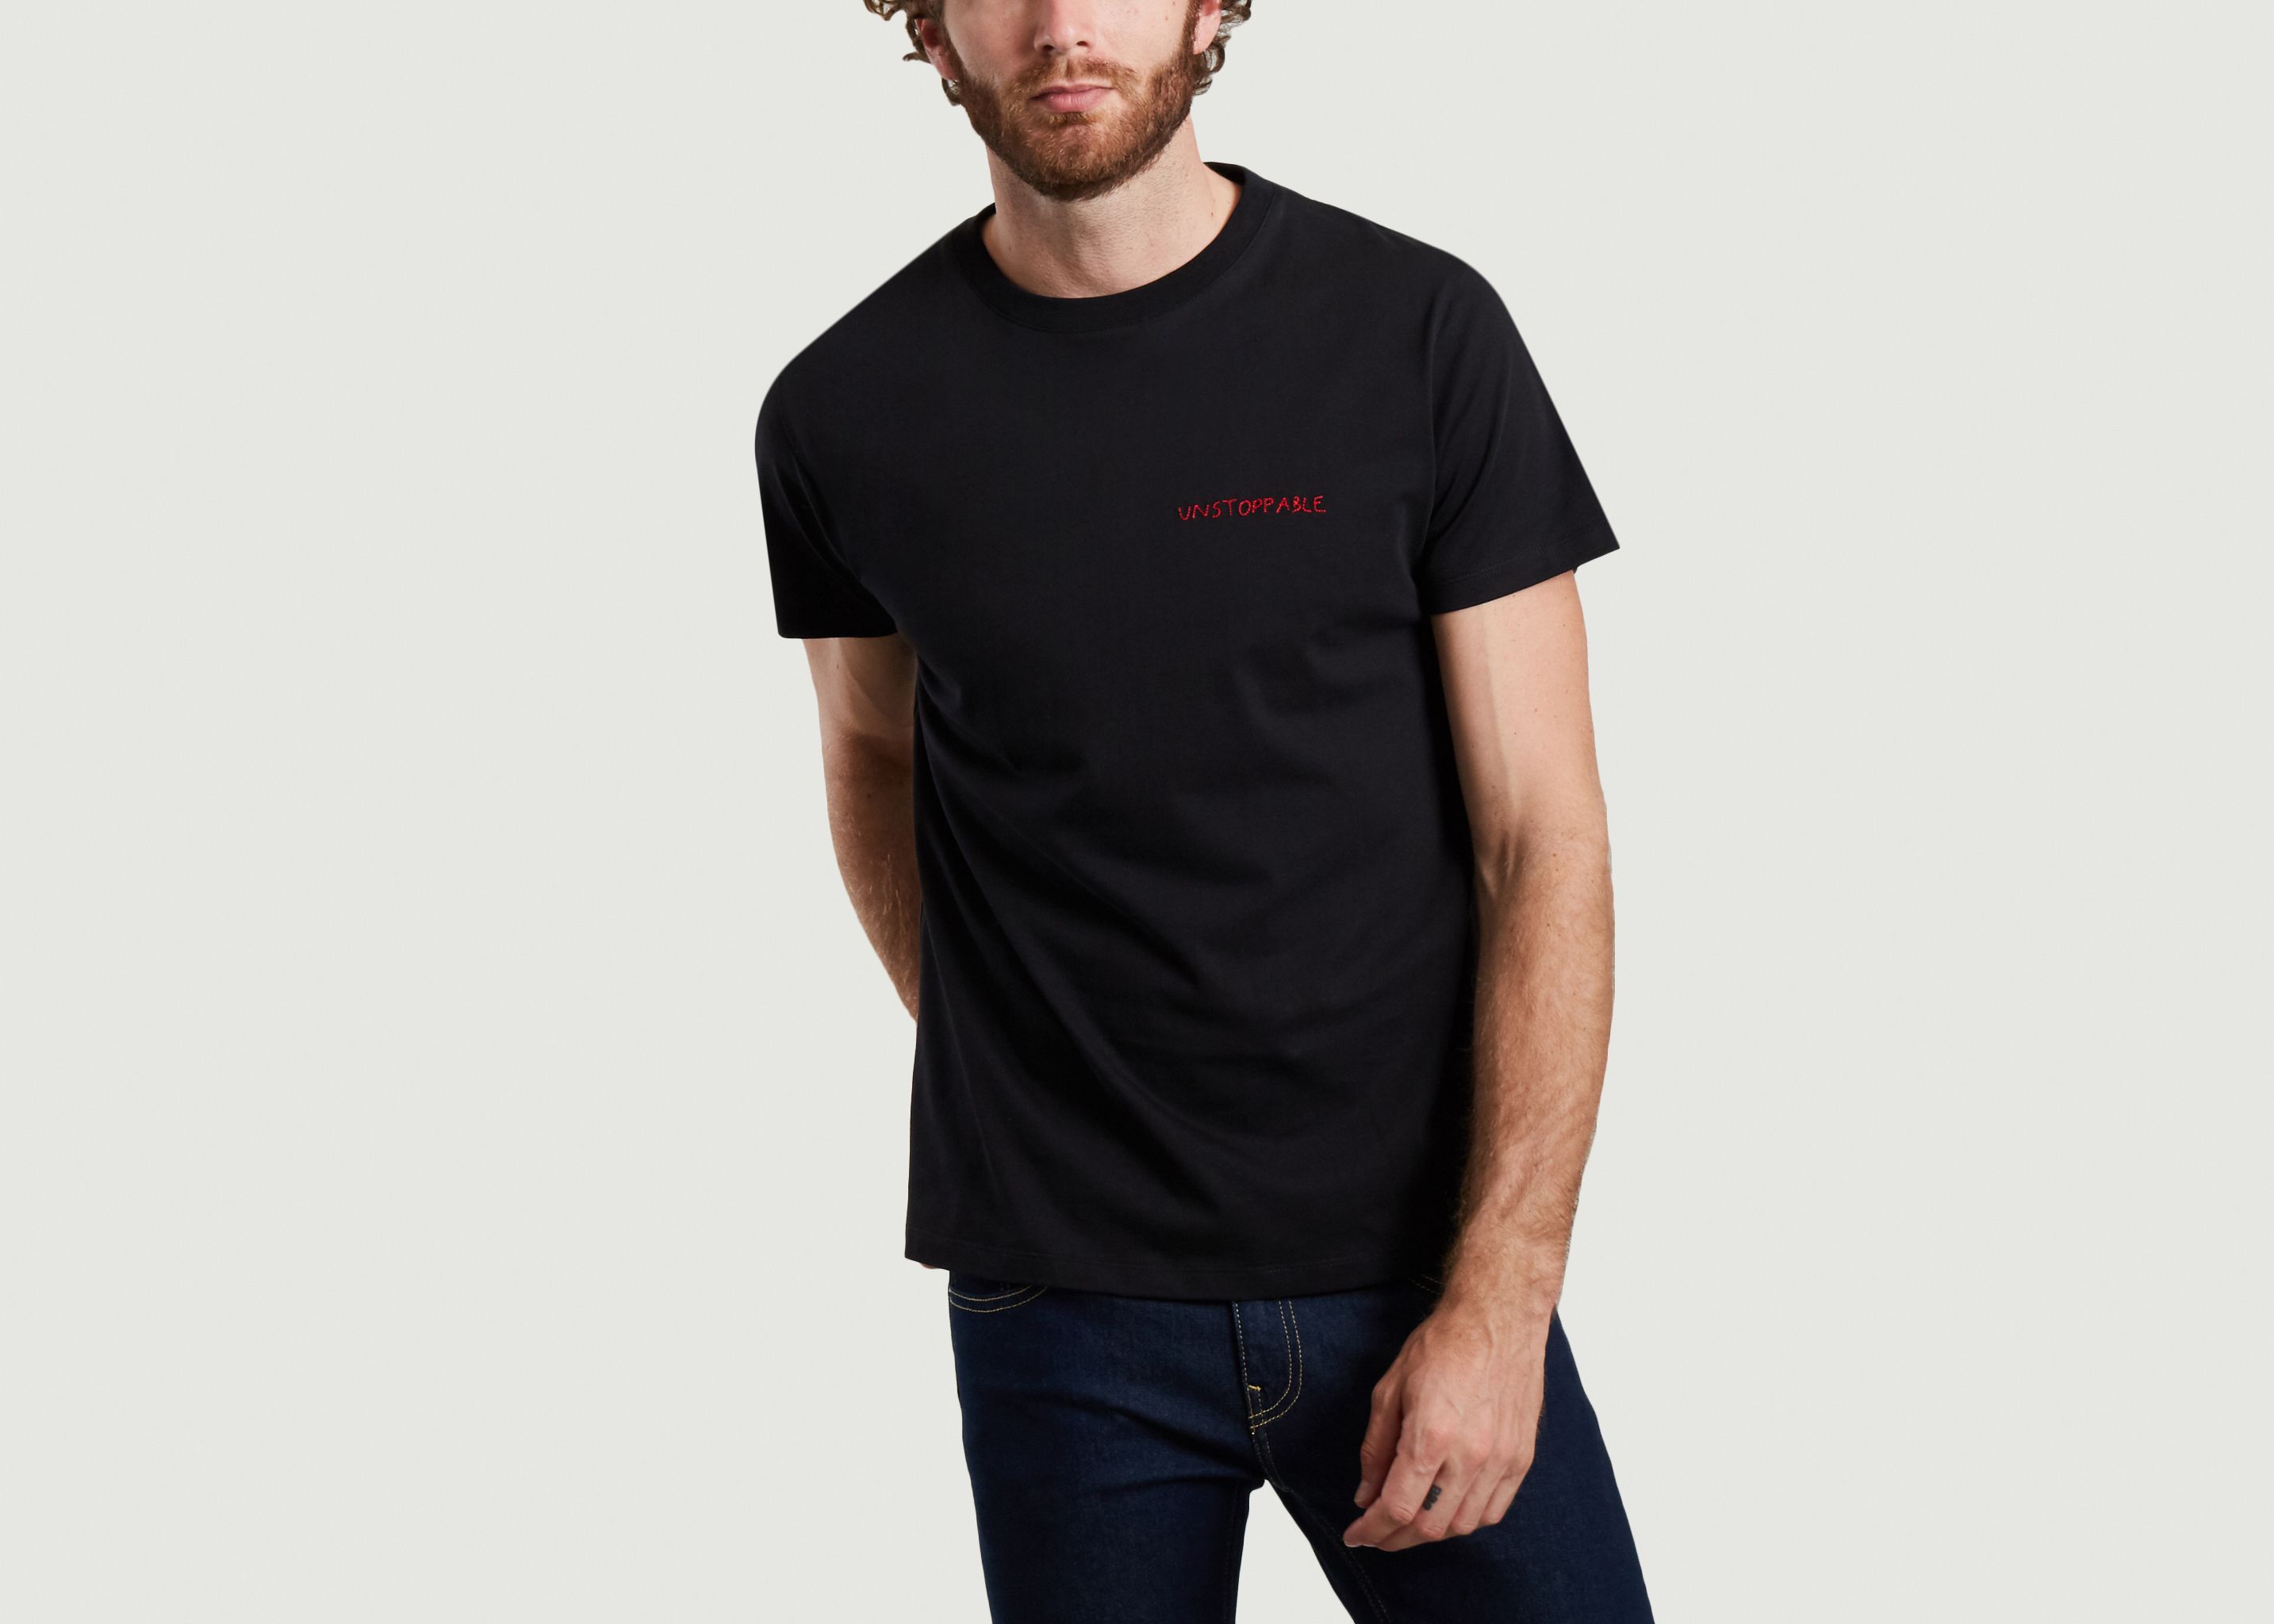 T-shirt brodé en coton bio Unstoppable - Maison Labiche